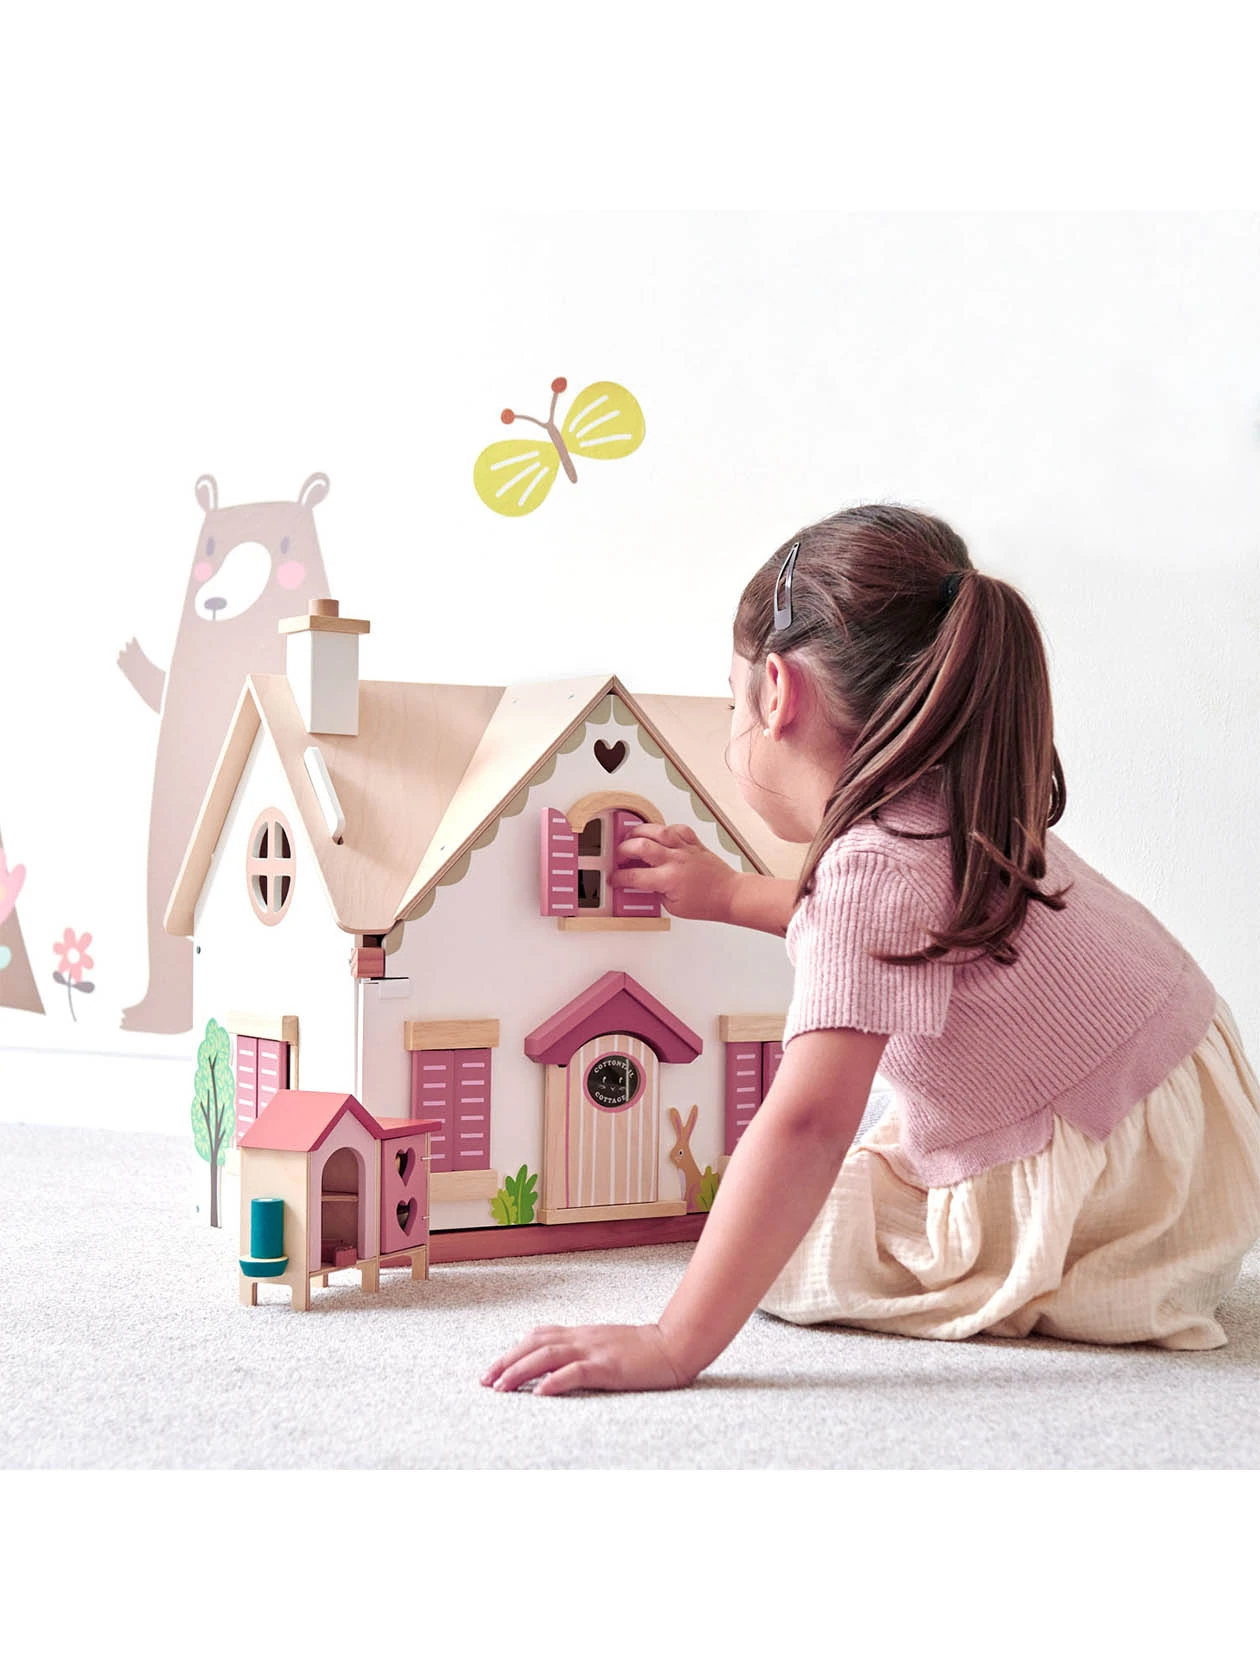 dDziewczynka bawi się drewnianym dwupietrowym domkiem dla lalek cottontail cottage od Tender Leaf Toys.